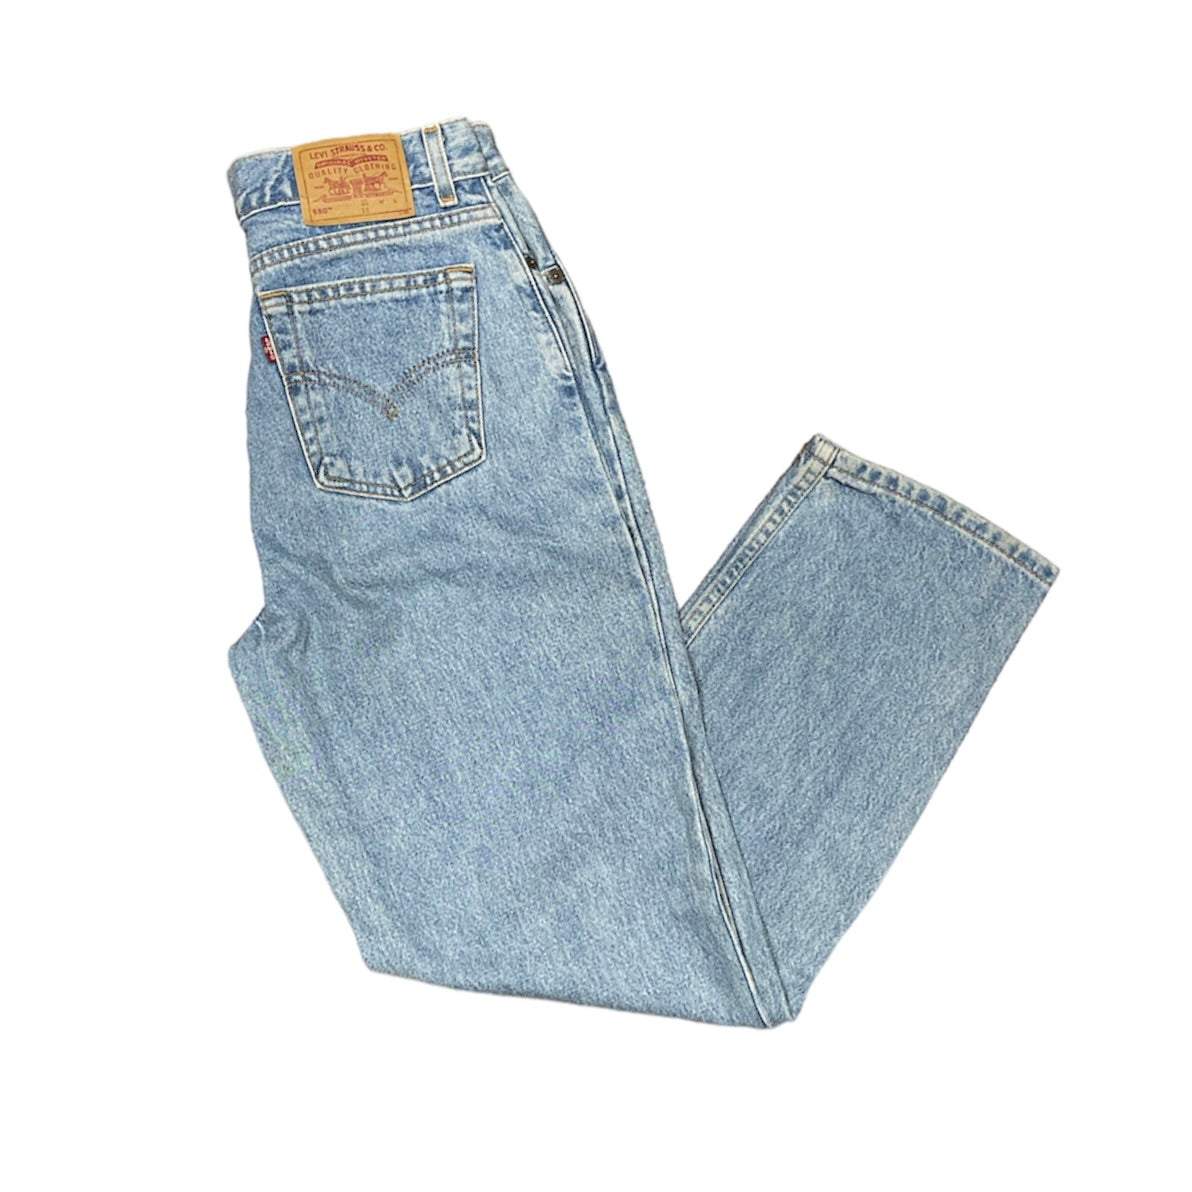 Vintage Levis 550 Light Blue Jeans (W30)